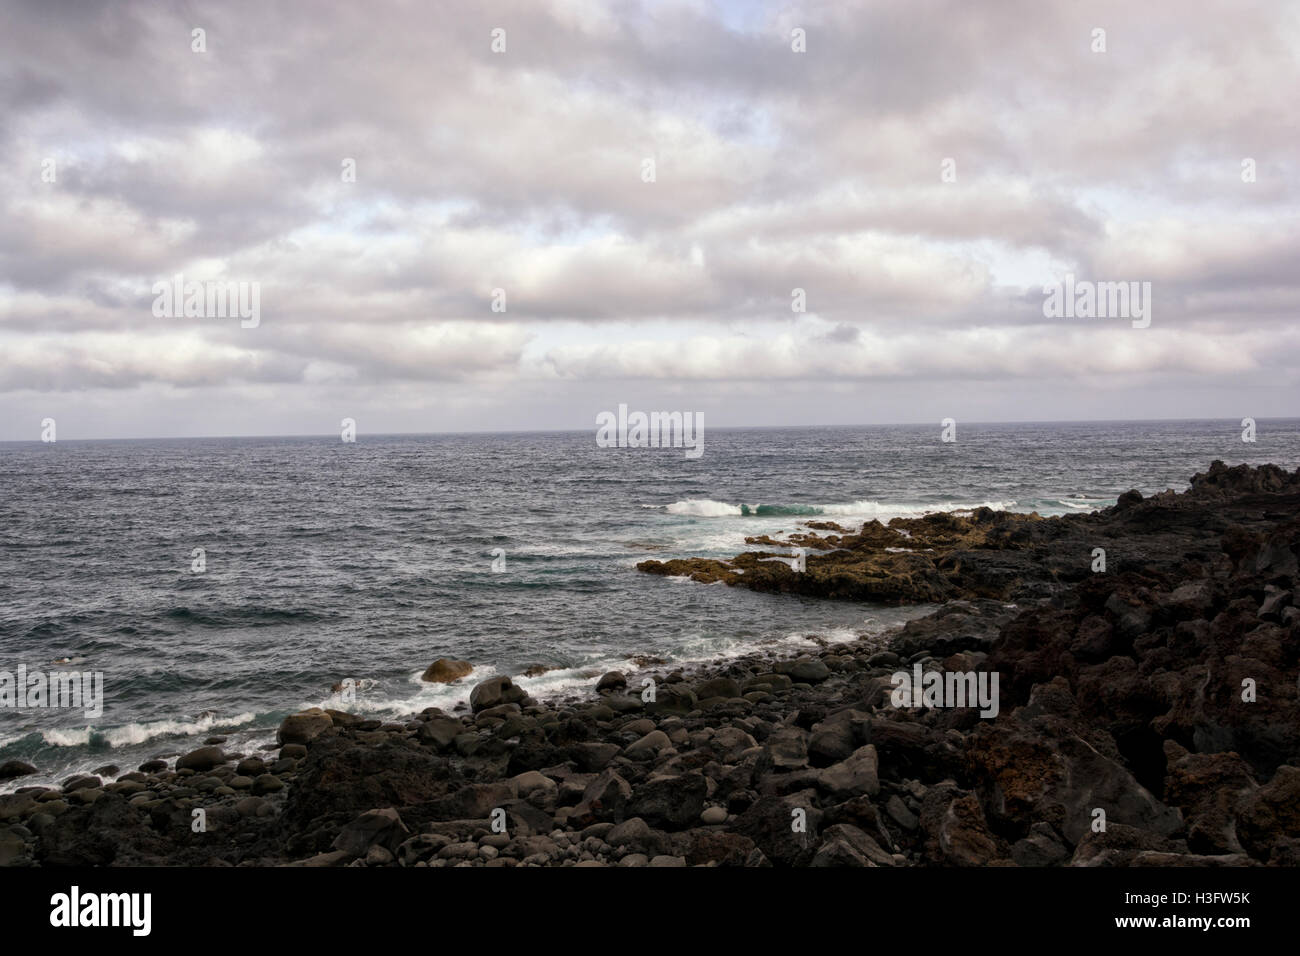 El Golfo - Lanzarote Playa Blanca Spain Stock Photo